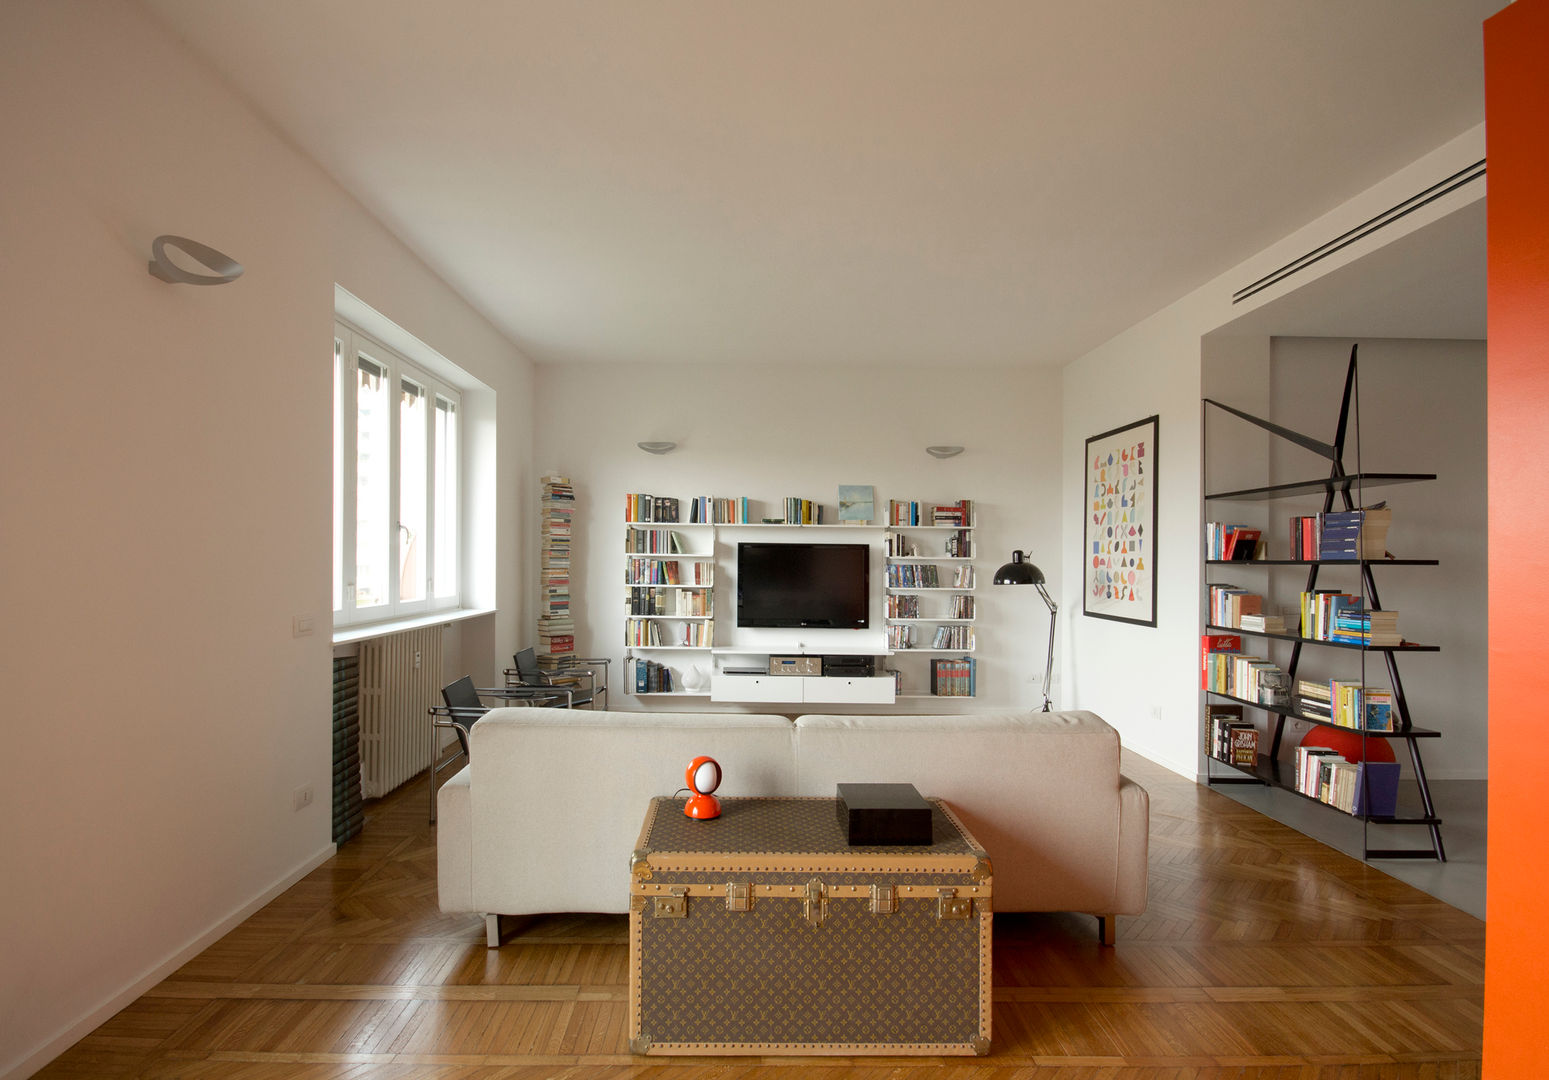 Casa CUBO, Giulietta Boggio archidesign Giulietta Boggio archidesign Rumah: Ide desain interior, inspirasi & gambar